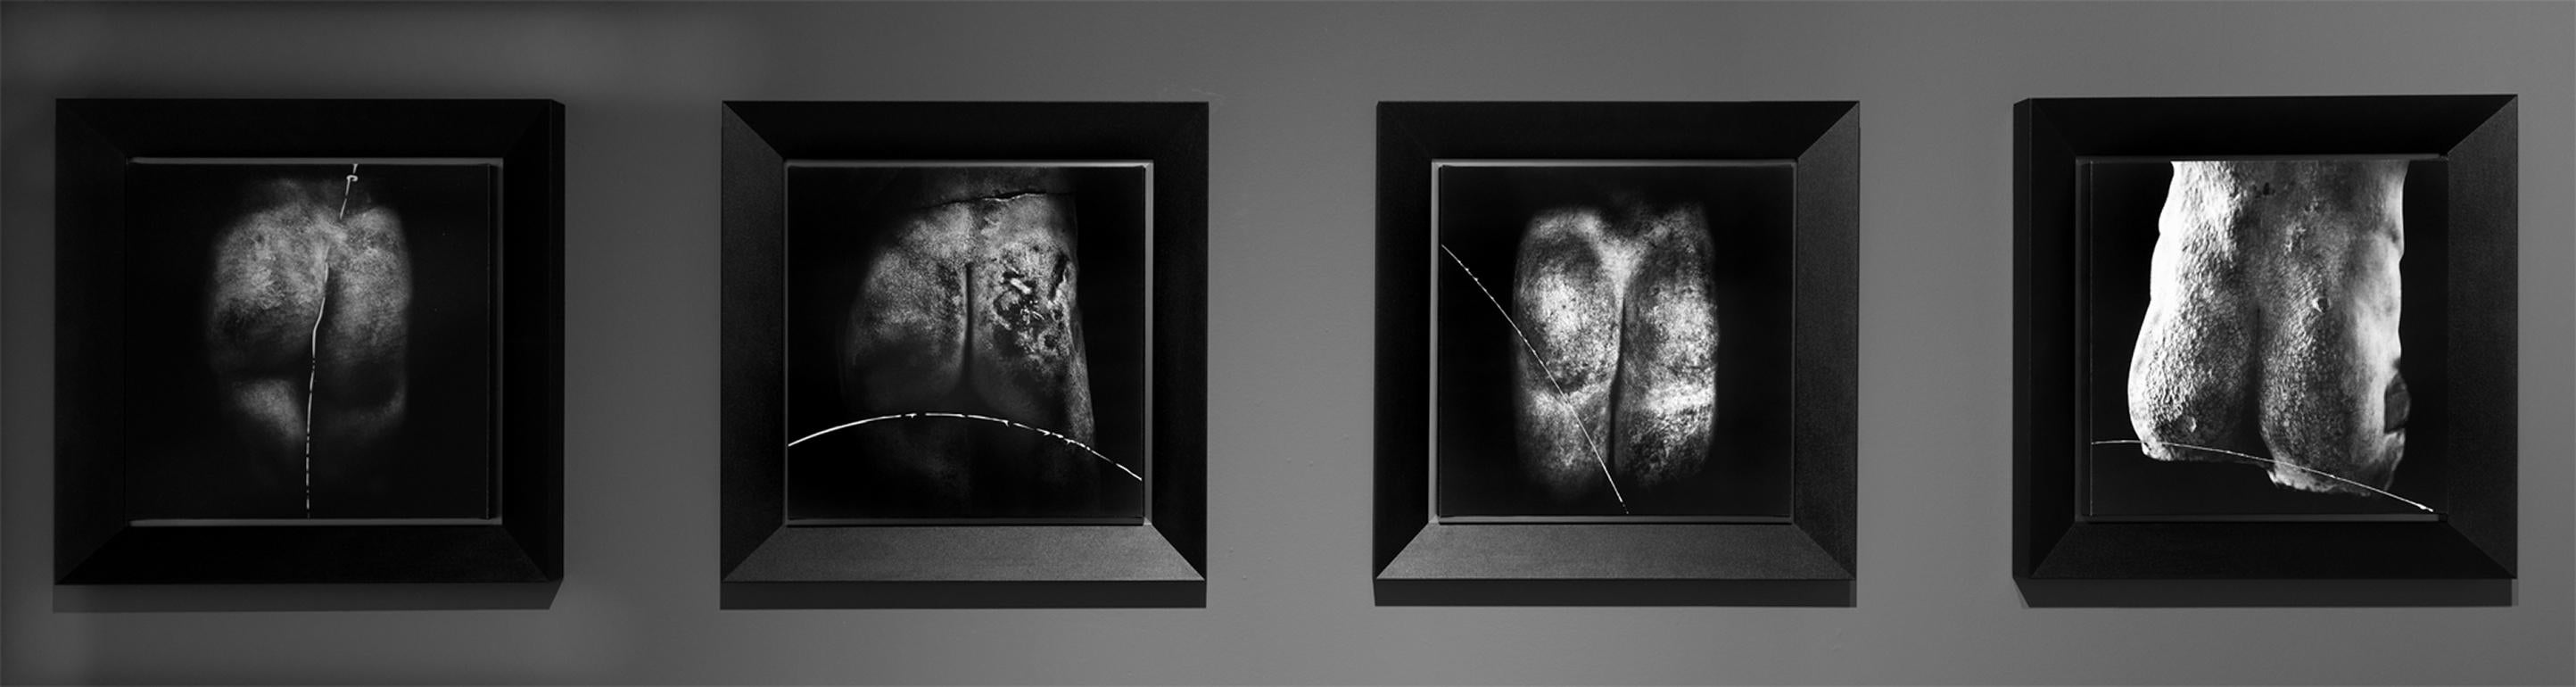 Fotografie, zeichnerische Intervention
Tors, Museum Antalya
Einzigartig
​
Die Steingesichter erscheinen als 